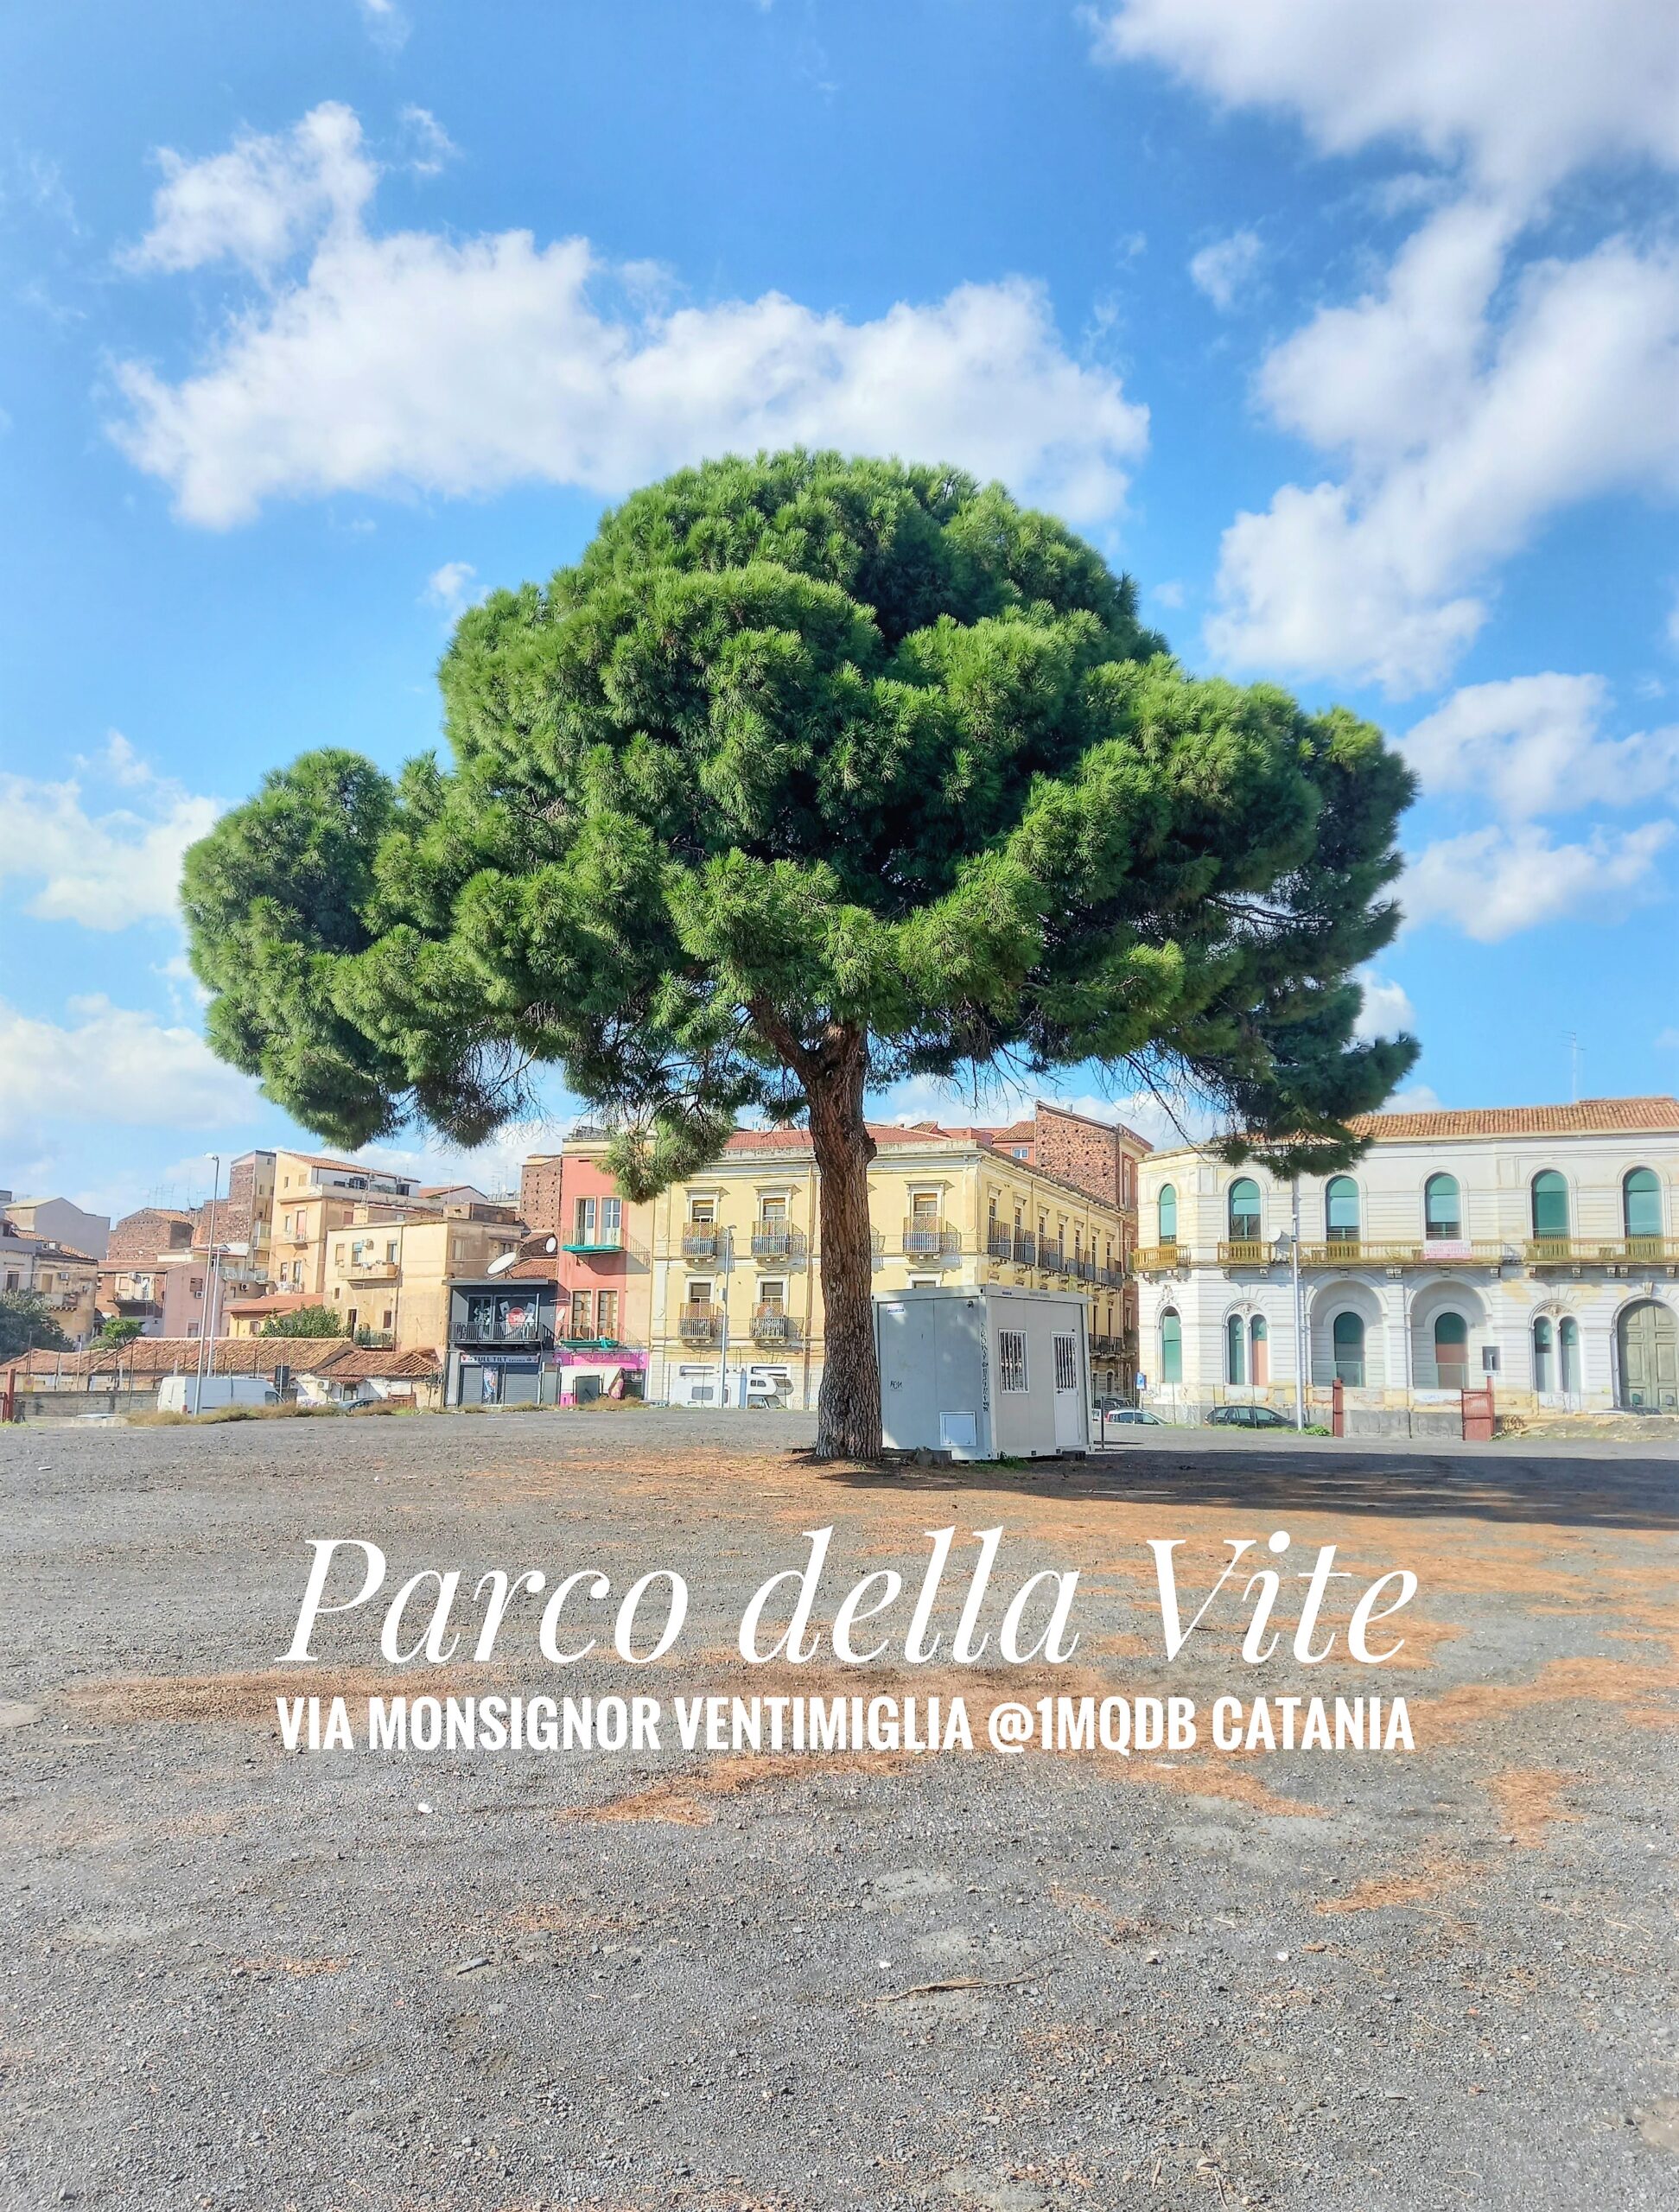 Parco della Vite Via Monsignor Ventimiglia, 1mqdb@catania